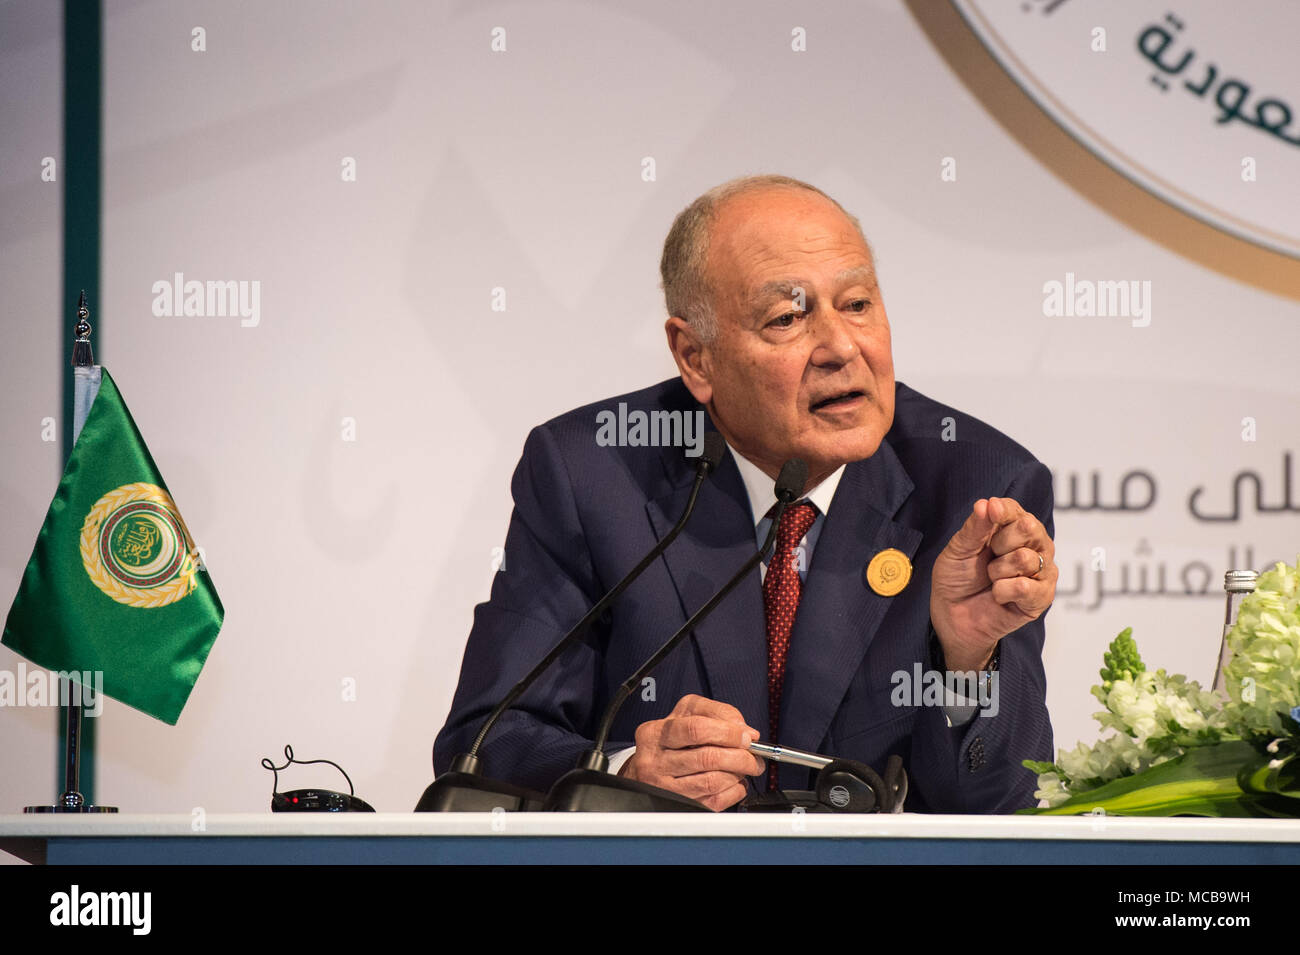 Dharan, l'ARABIE SAOUDITE 15 Avril 2018 Le secrétaire général de la Ligue arabe, Ahmed Aboul-Gheit assiste à une conférence de presse commune après la clôture du 29e Sommet de la Ligue arabe à Dhahran, en Arabie Saoudite, le 15 avril 2018. Le 29e Sommet de la Ligue arabe a eu lieu dans l'Est de l'Arabie saoudite ville de Dhahran le dimanche, avec les dirigeants de 22 pays ont assisté à cela. Source : Xinhua/Alamy Live News Banque D'Images